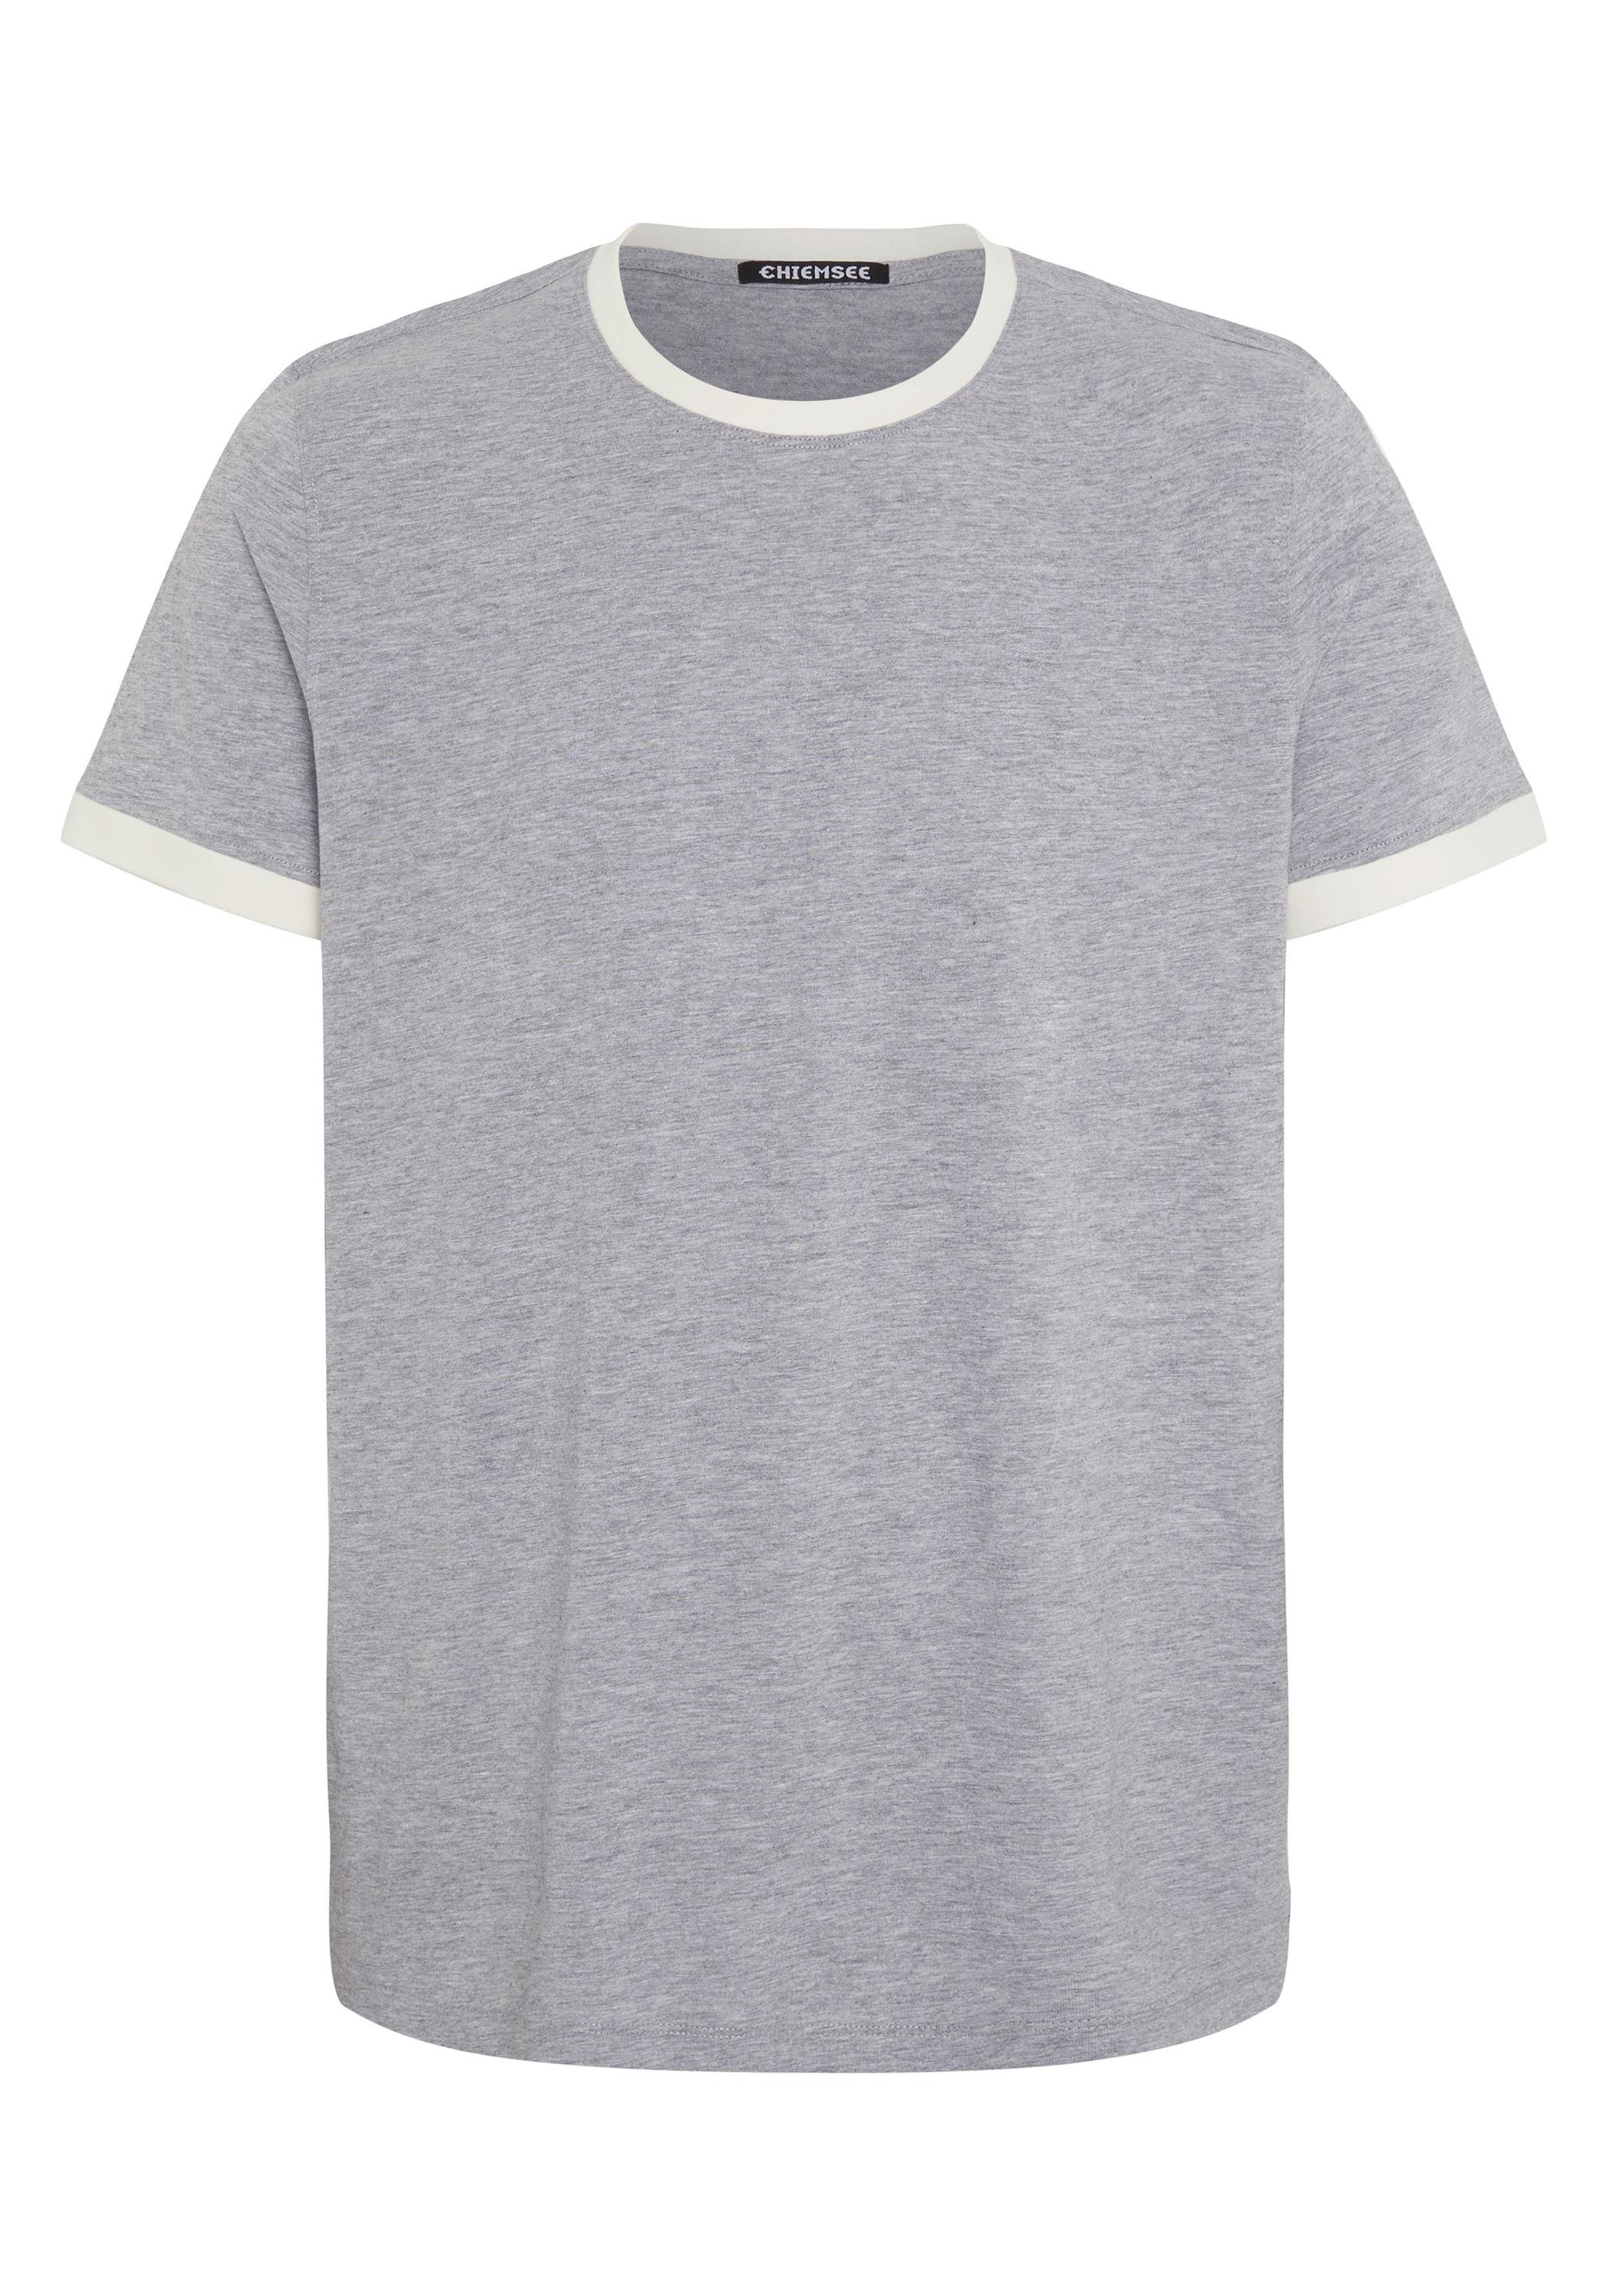 SportScheck Shop T-Shirt von kaufen Chiemsee im Herren Neutral 17-4402M Melange Online Gray Shirt